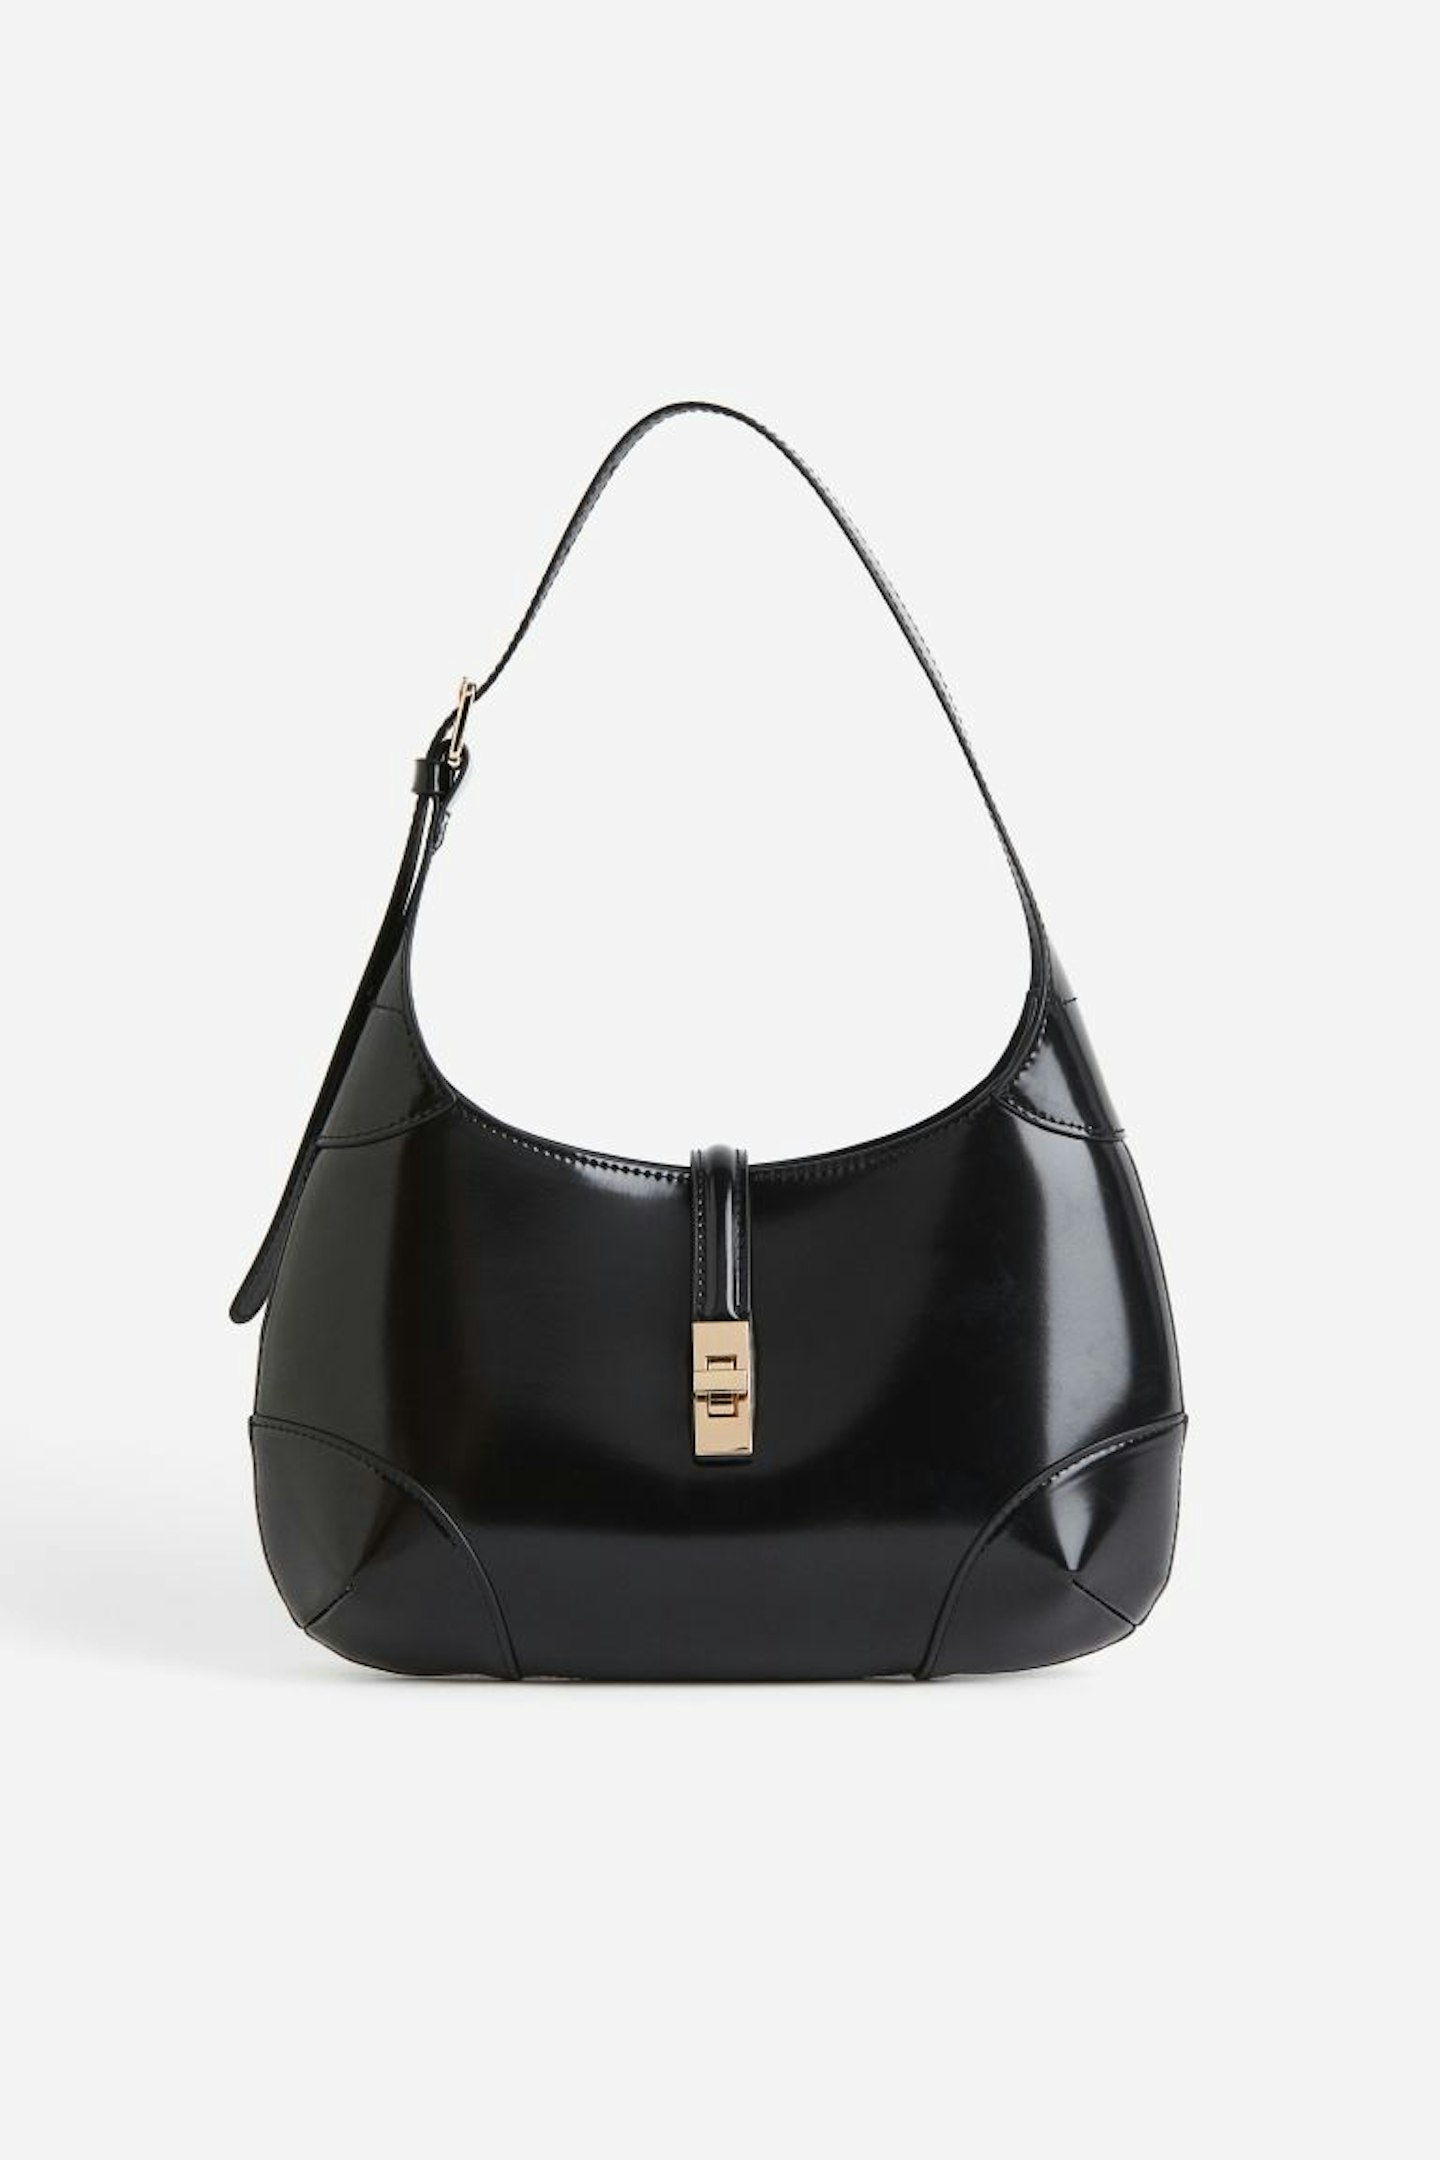 H&M, Shoulder Bag